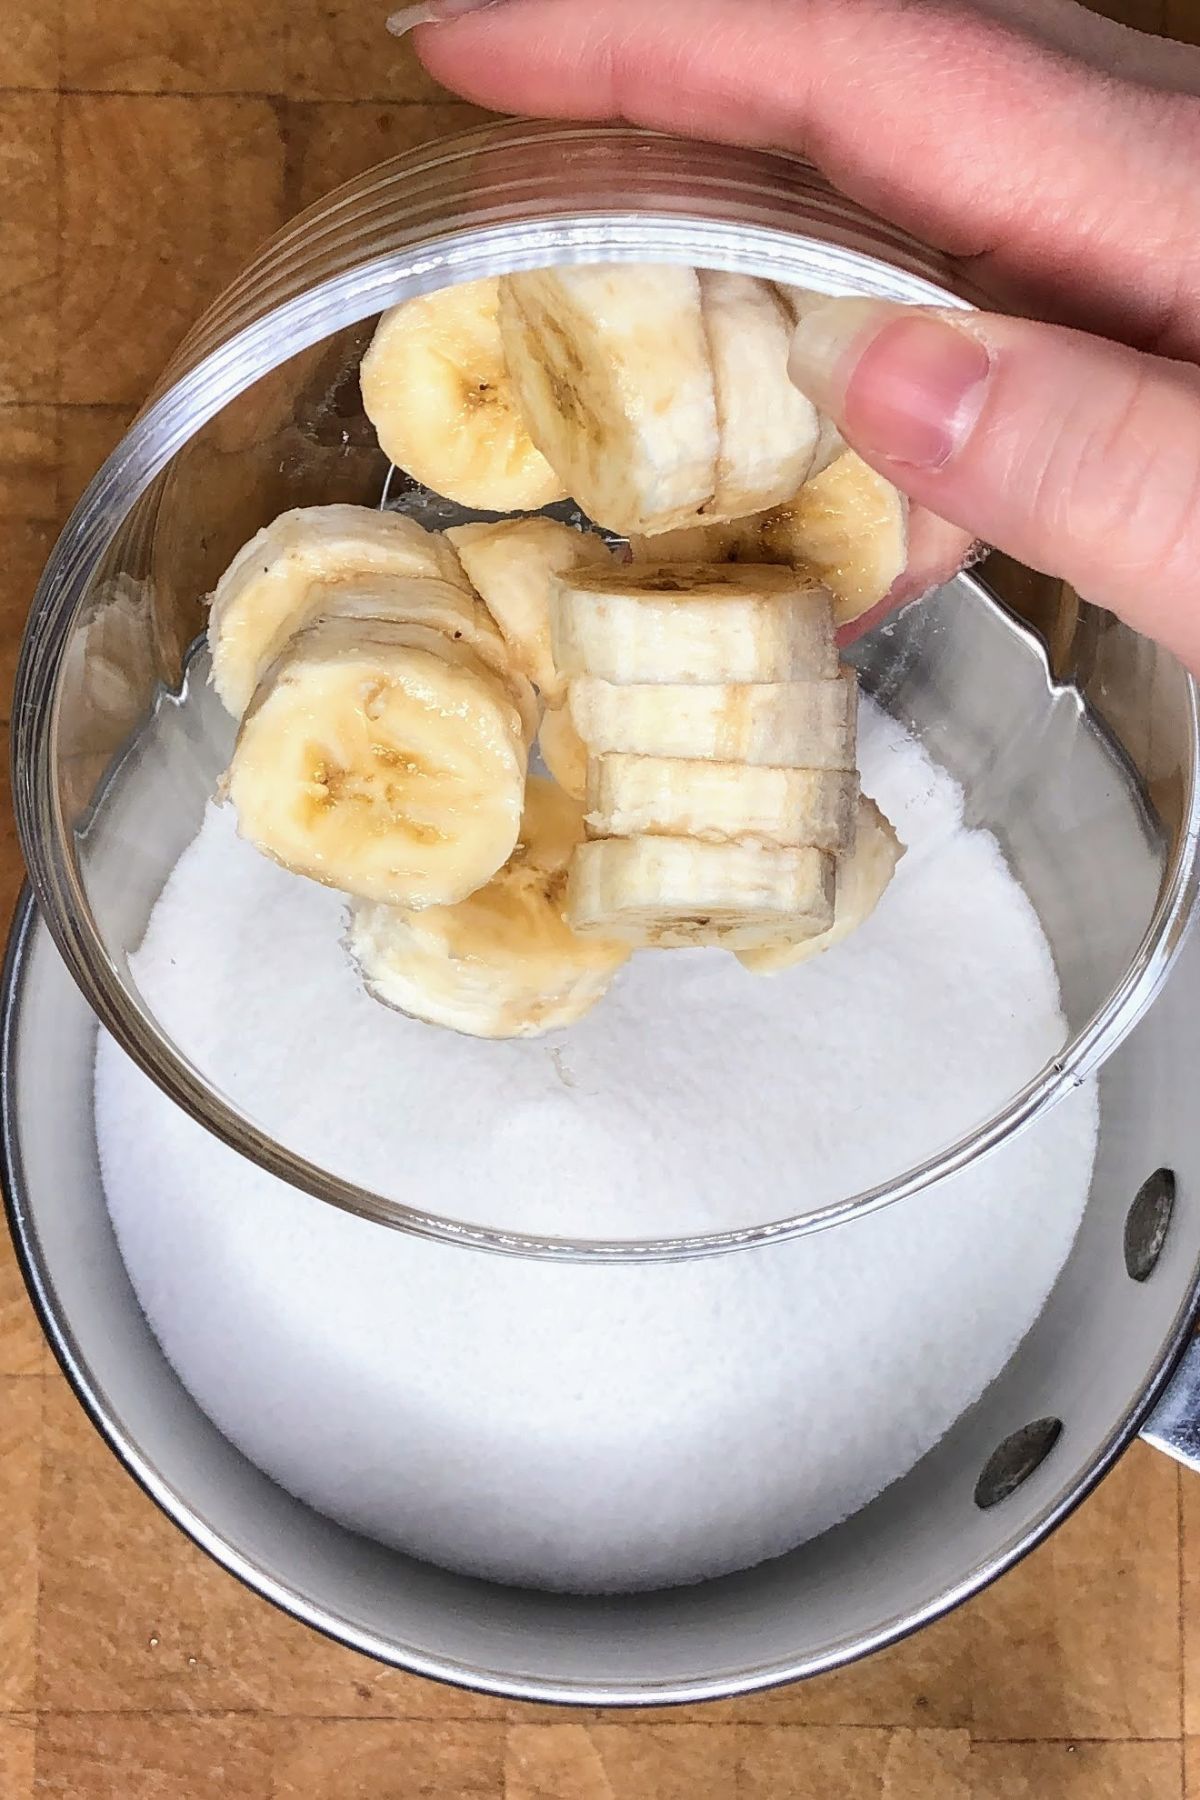 Pouring bananas into a pot with sugar.